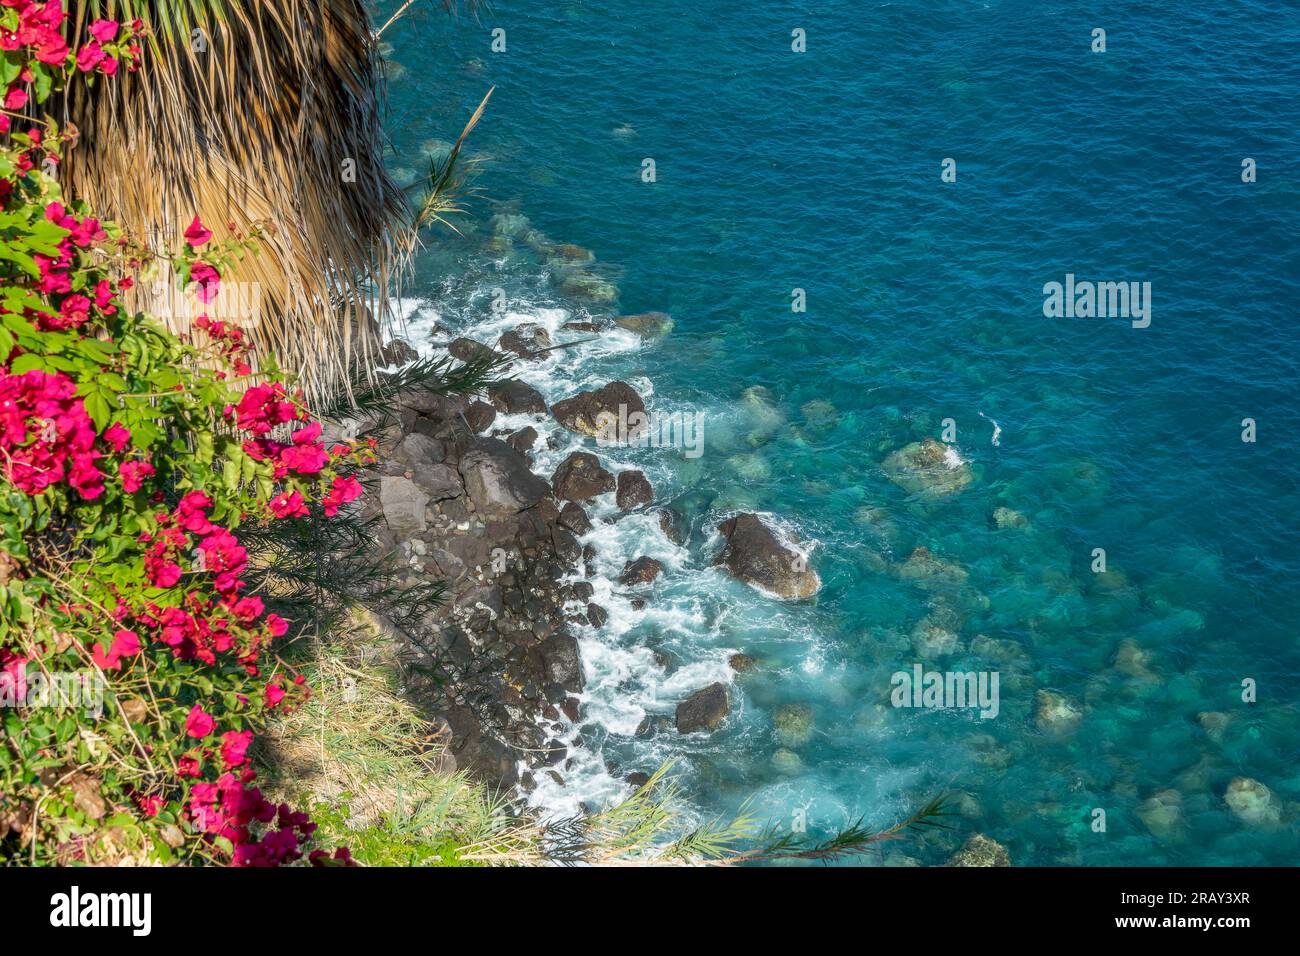 Vue sur l'océan avec des fleurs de bougainvilliers et des palmiers sur l'île de Madère, Portugal Banque D'Images